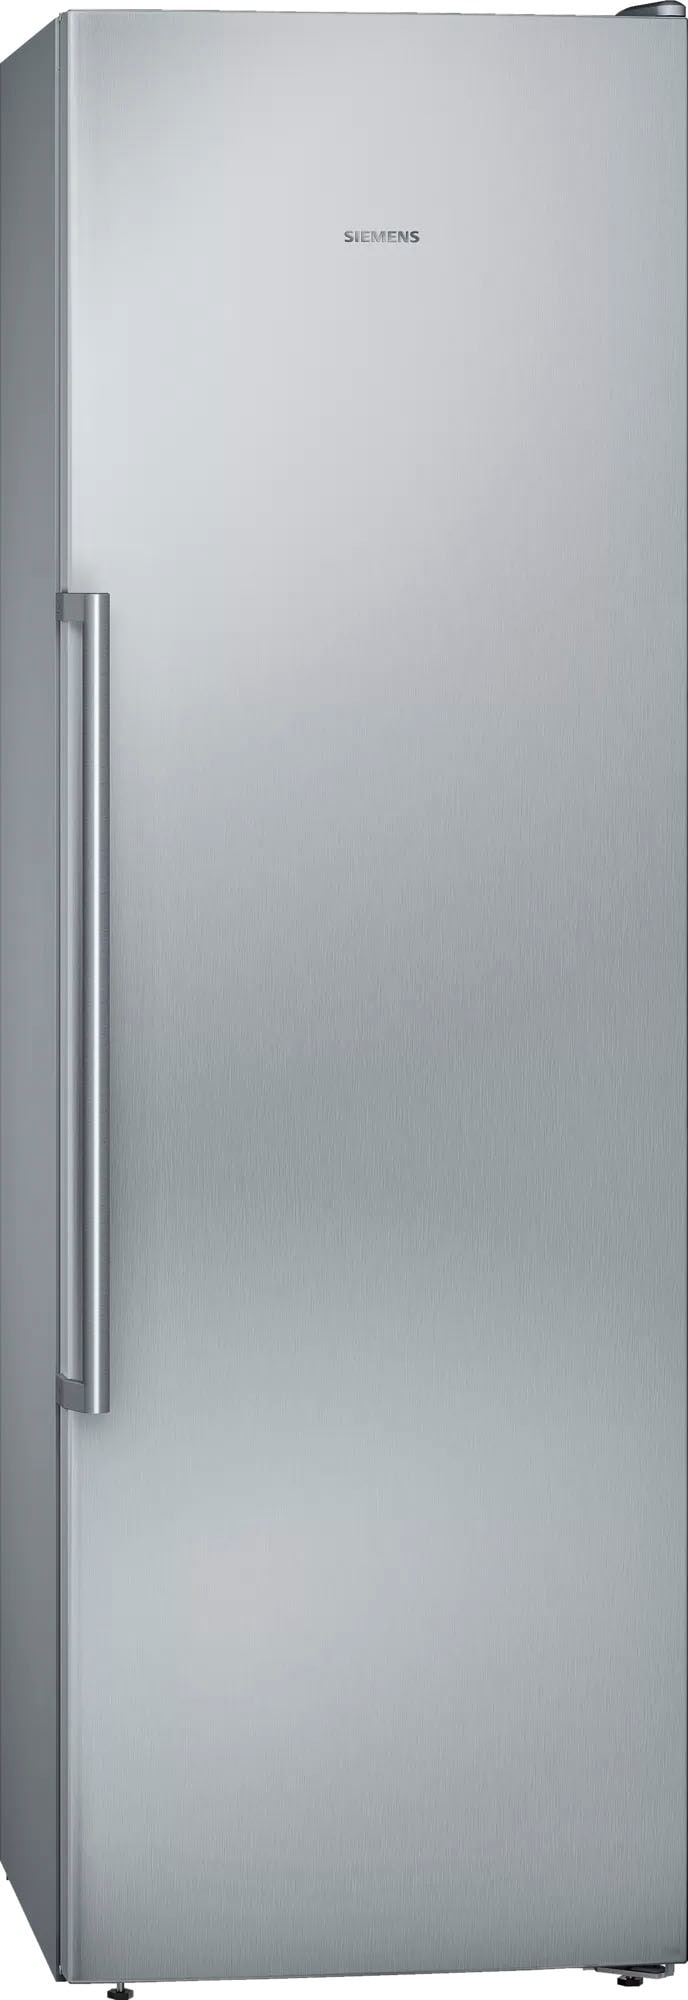 SIEMENS Gefrierschrank »GS36NAEP«, iQ500, 186 cm hoch, 60 cm breit